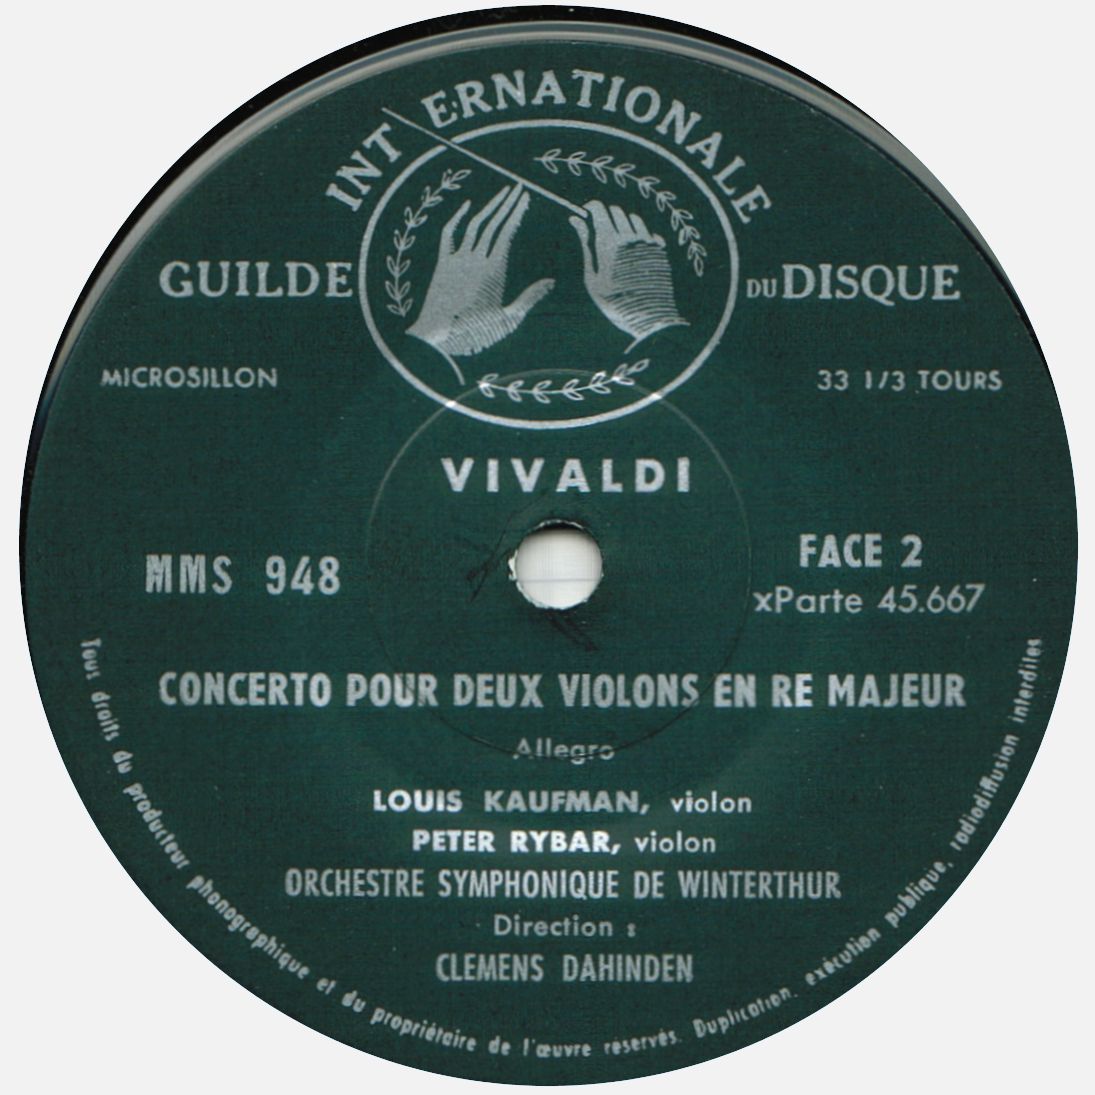 Guilde Internationale du Disque MMS 948, étiquette verso, cliquer pour une vue agrandie